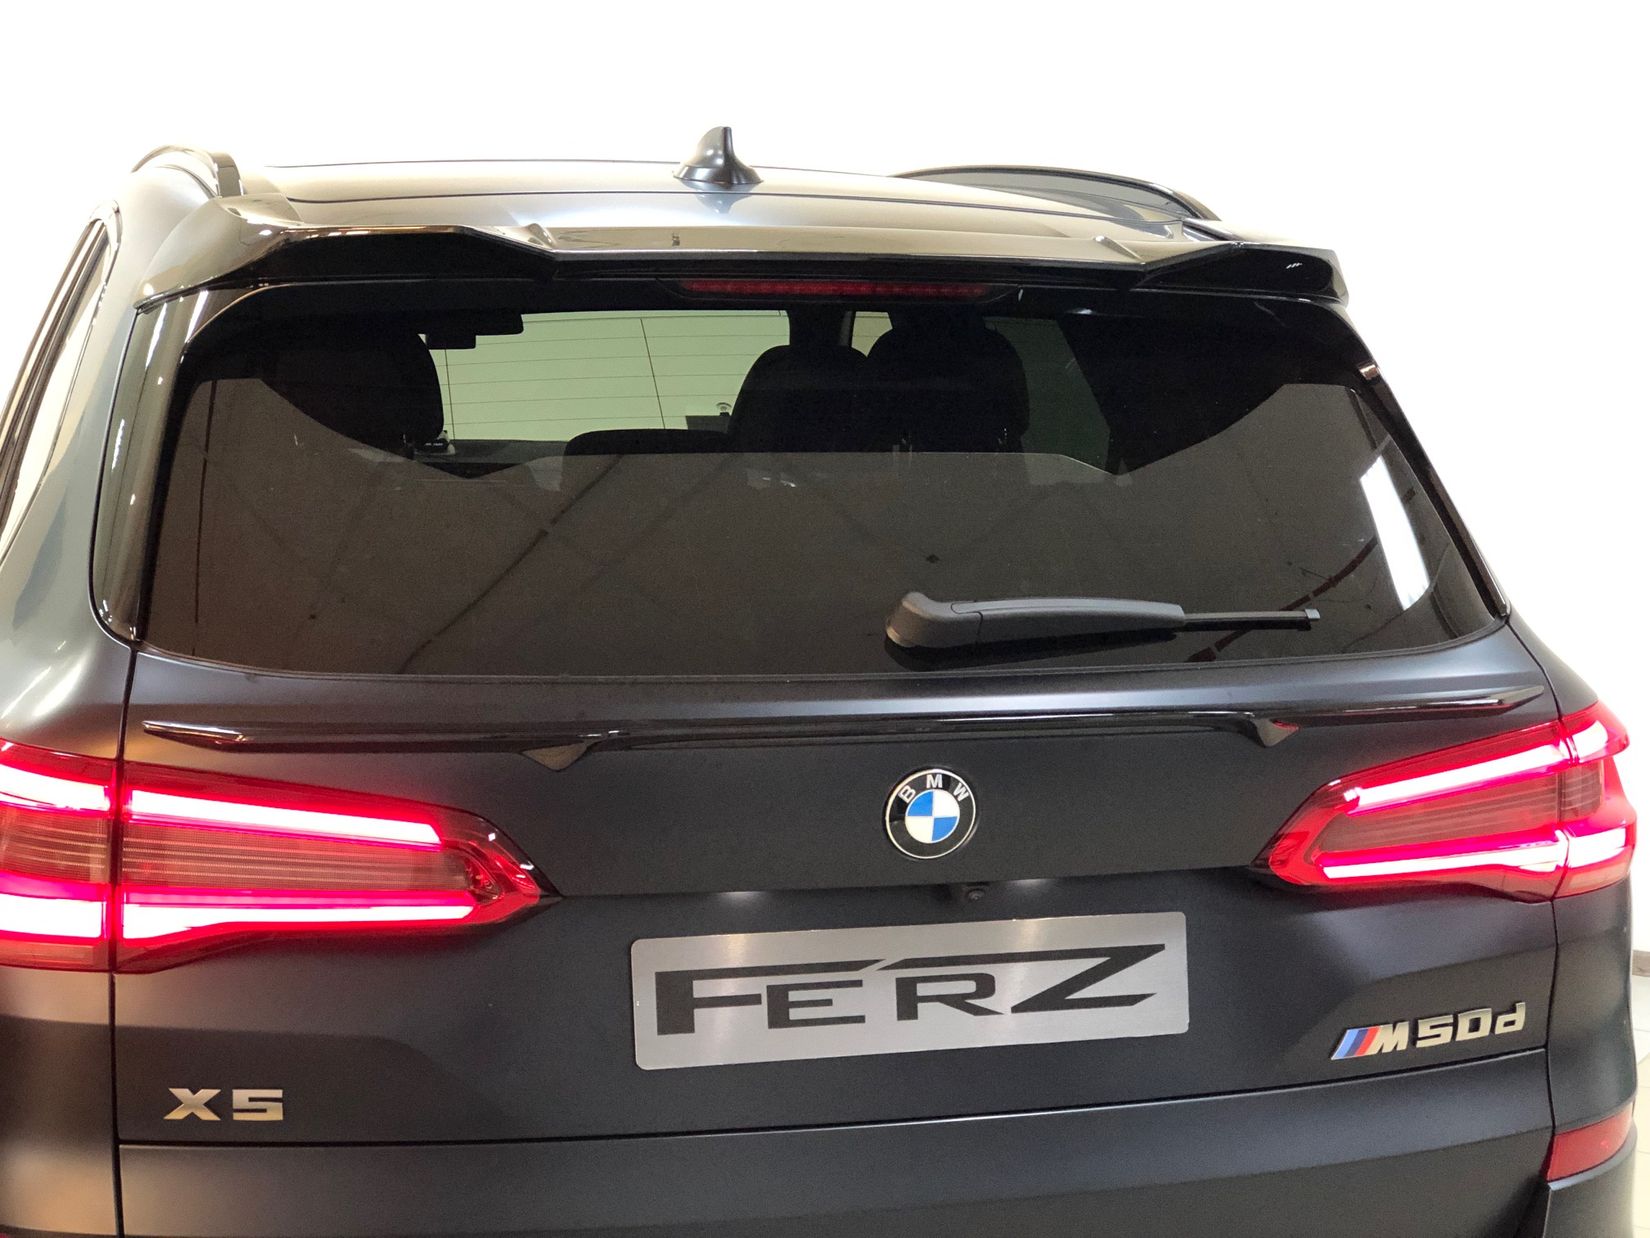 спойлеры крышки багажника для BMW G05 FERZ